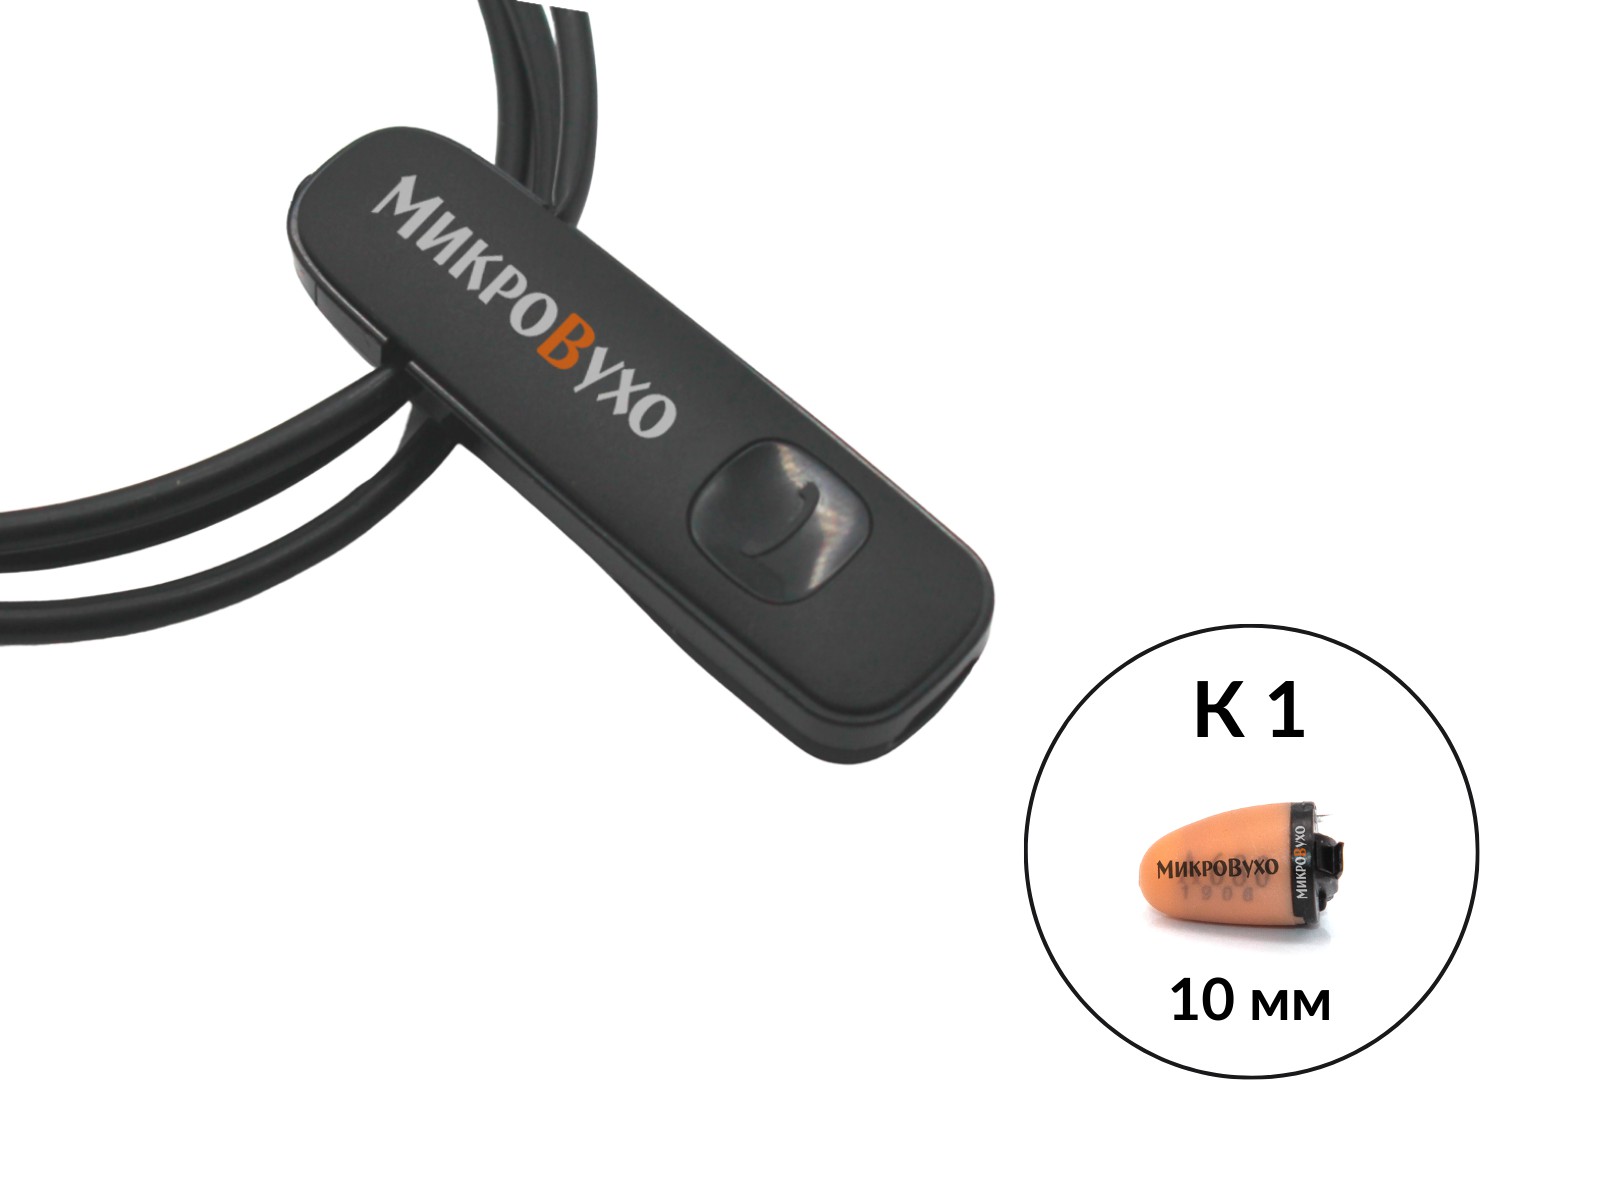 Гарнитура Bluetooth Plantronics с капсульным микронаушником K1 10 мм - изображение 13